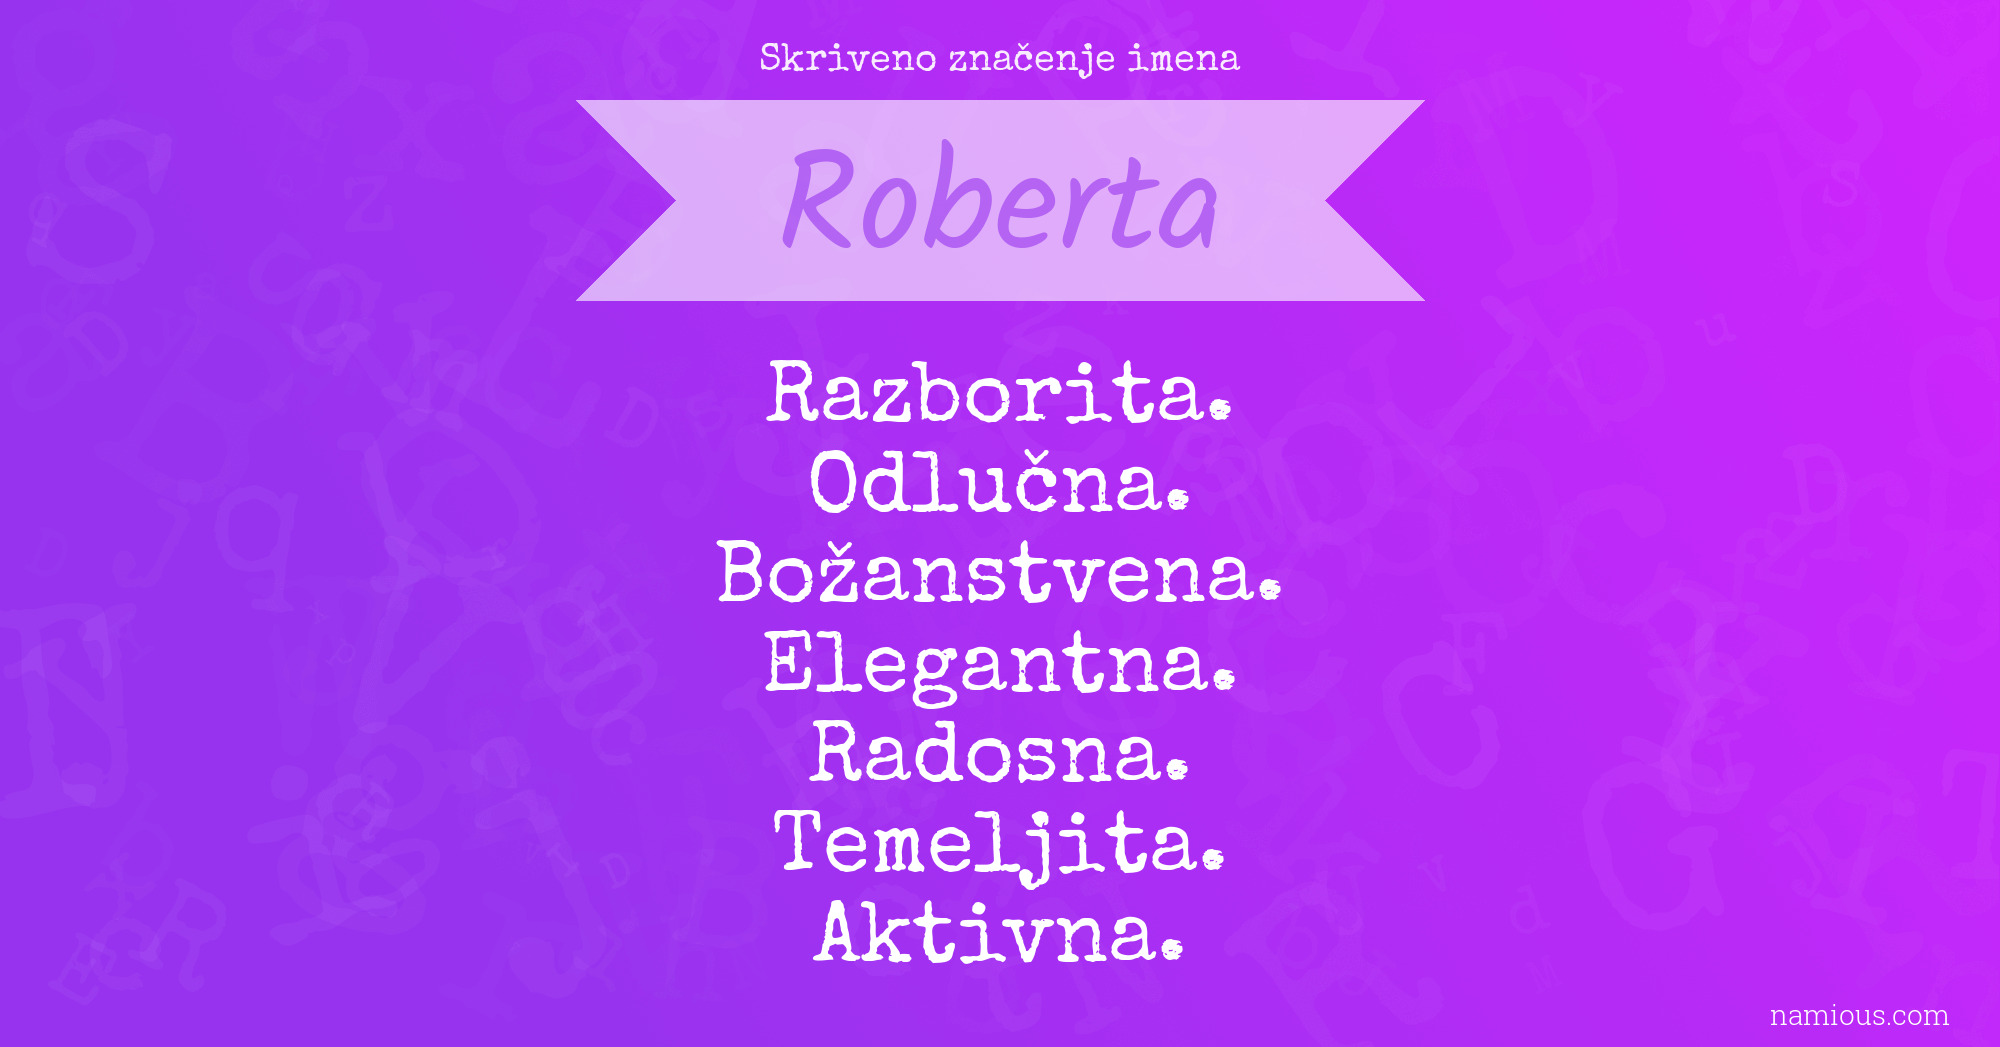 Skriveno značenje imena Roberta